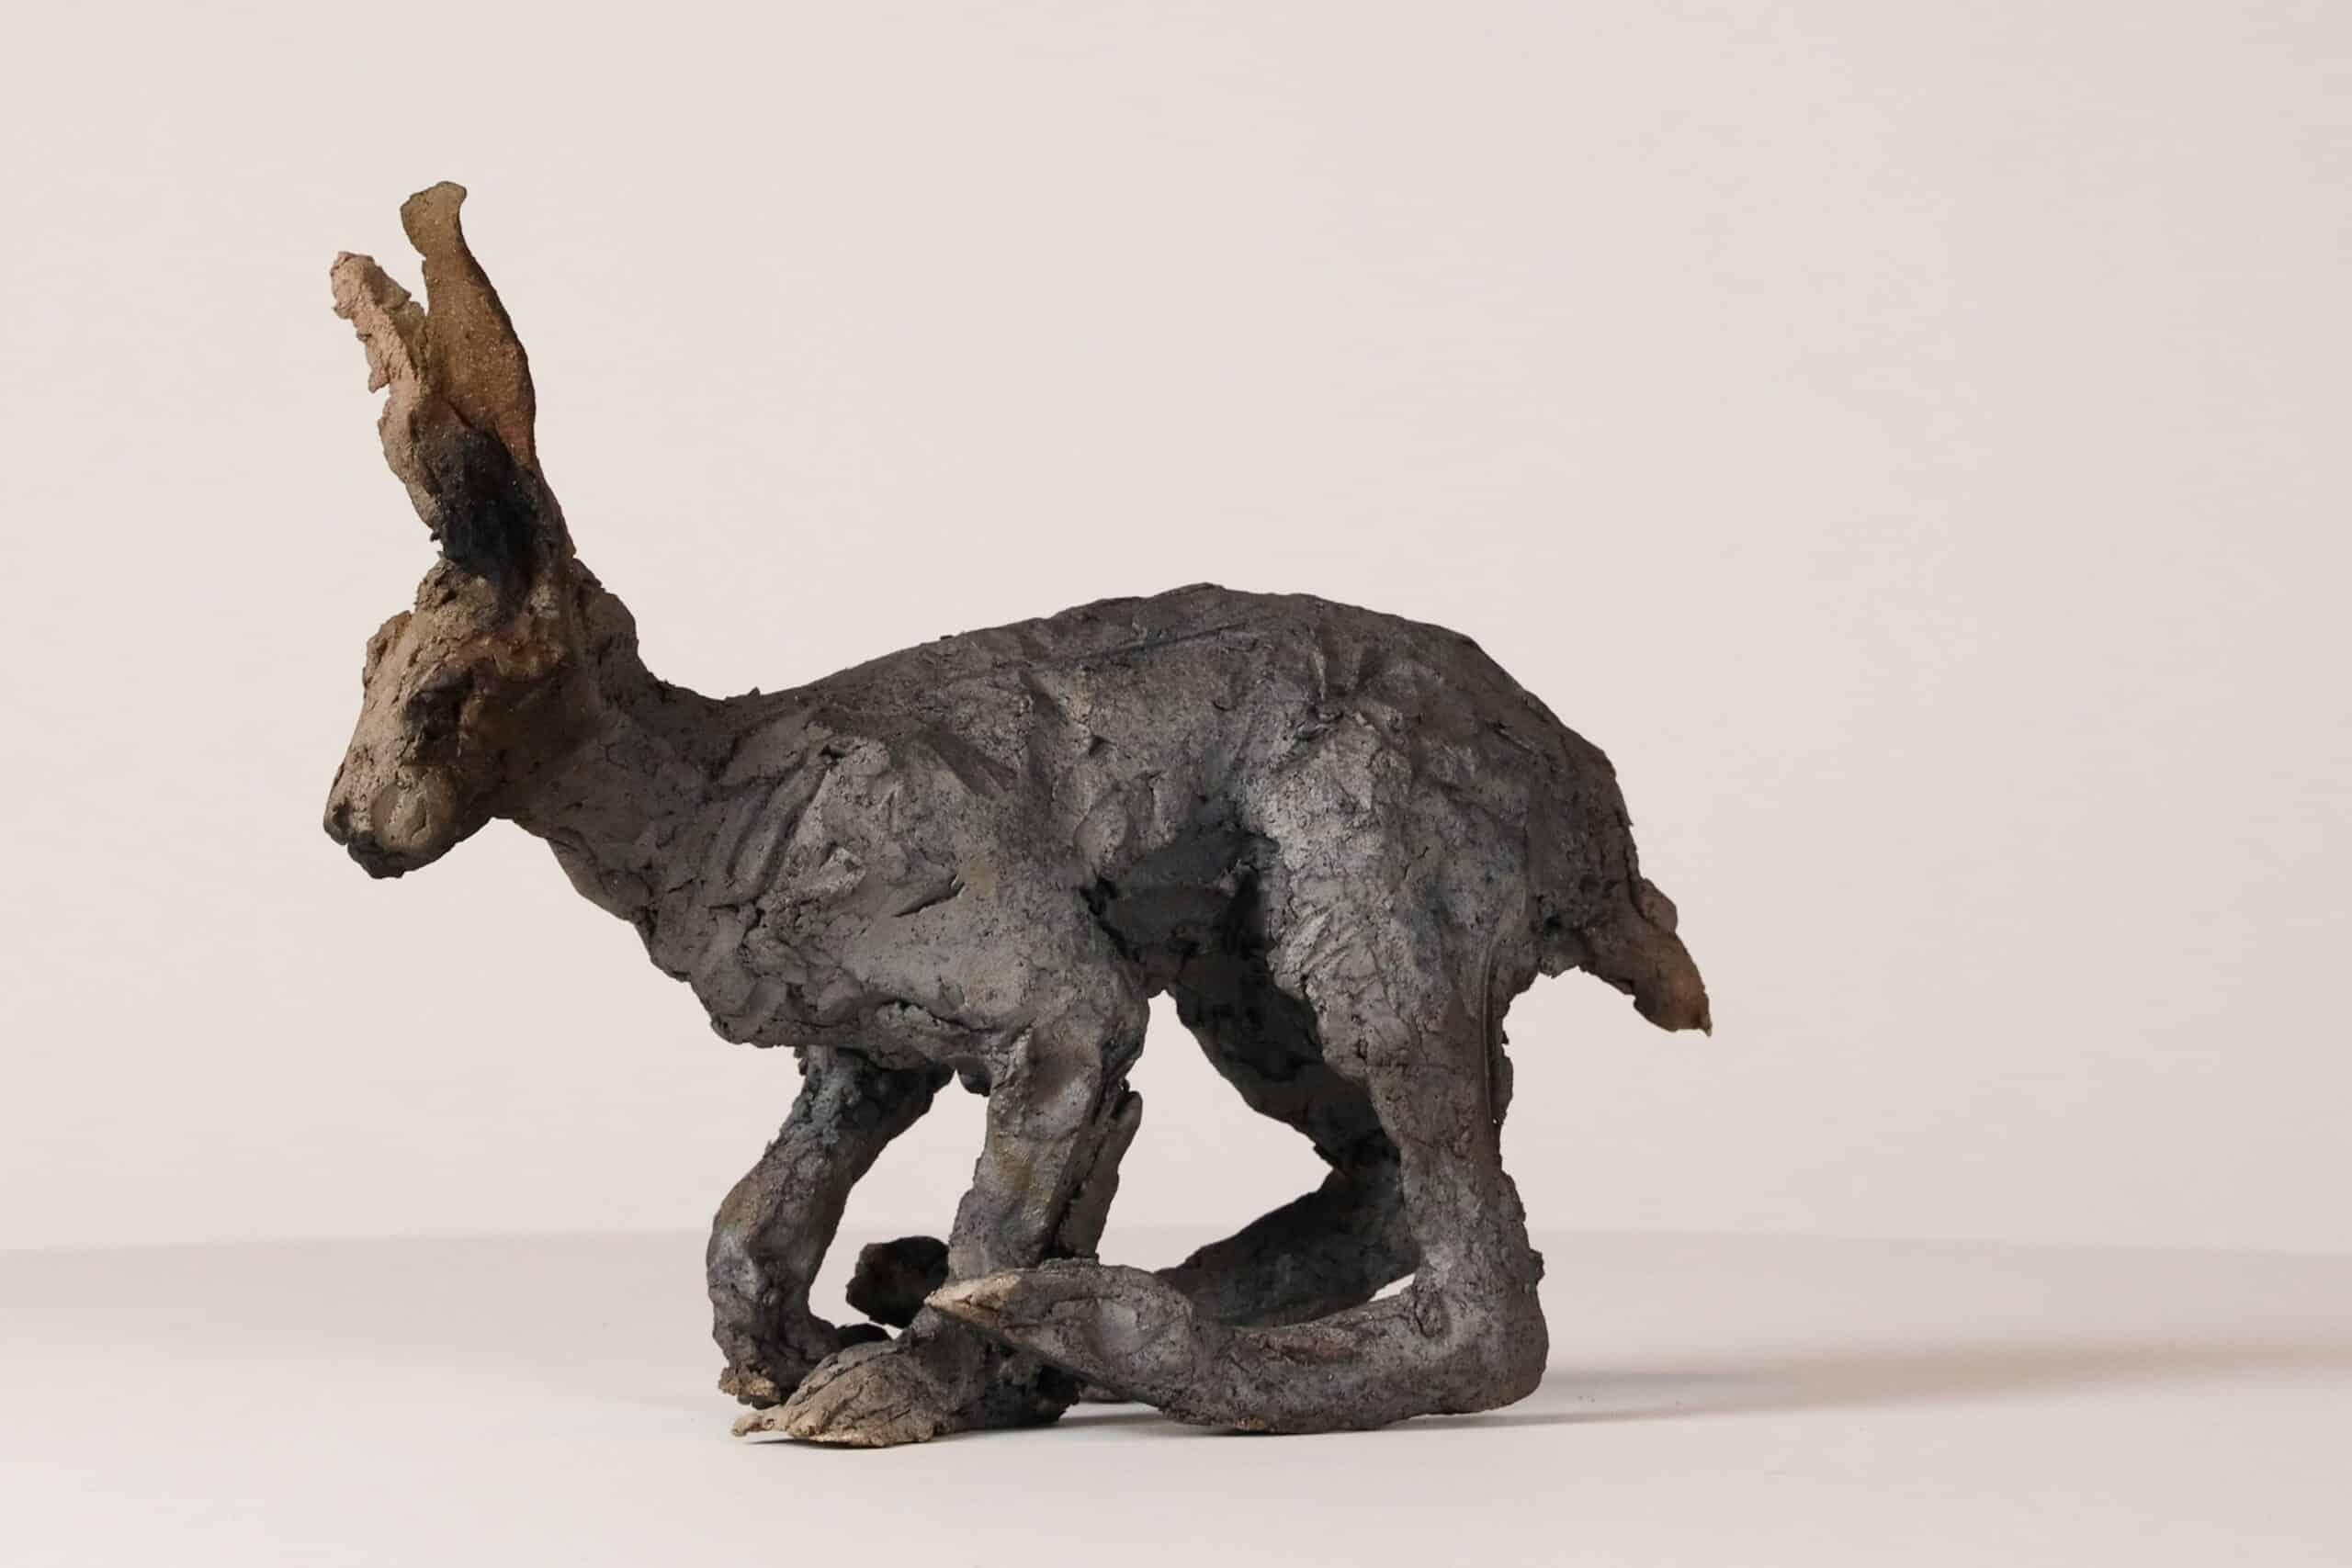 Hare est une sculpture unique en grès cuit à la fumée de l'artiste contemporaine française Cécile Raynal. Ses dimensions sont de 22 × 27 × 11 cm (8.7 × 10.6 × 4.3 in). 
La sculpture est une pièce unique signée par l'artiste et accompagnée d'un